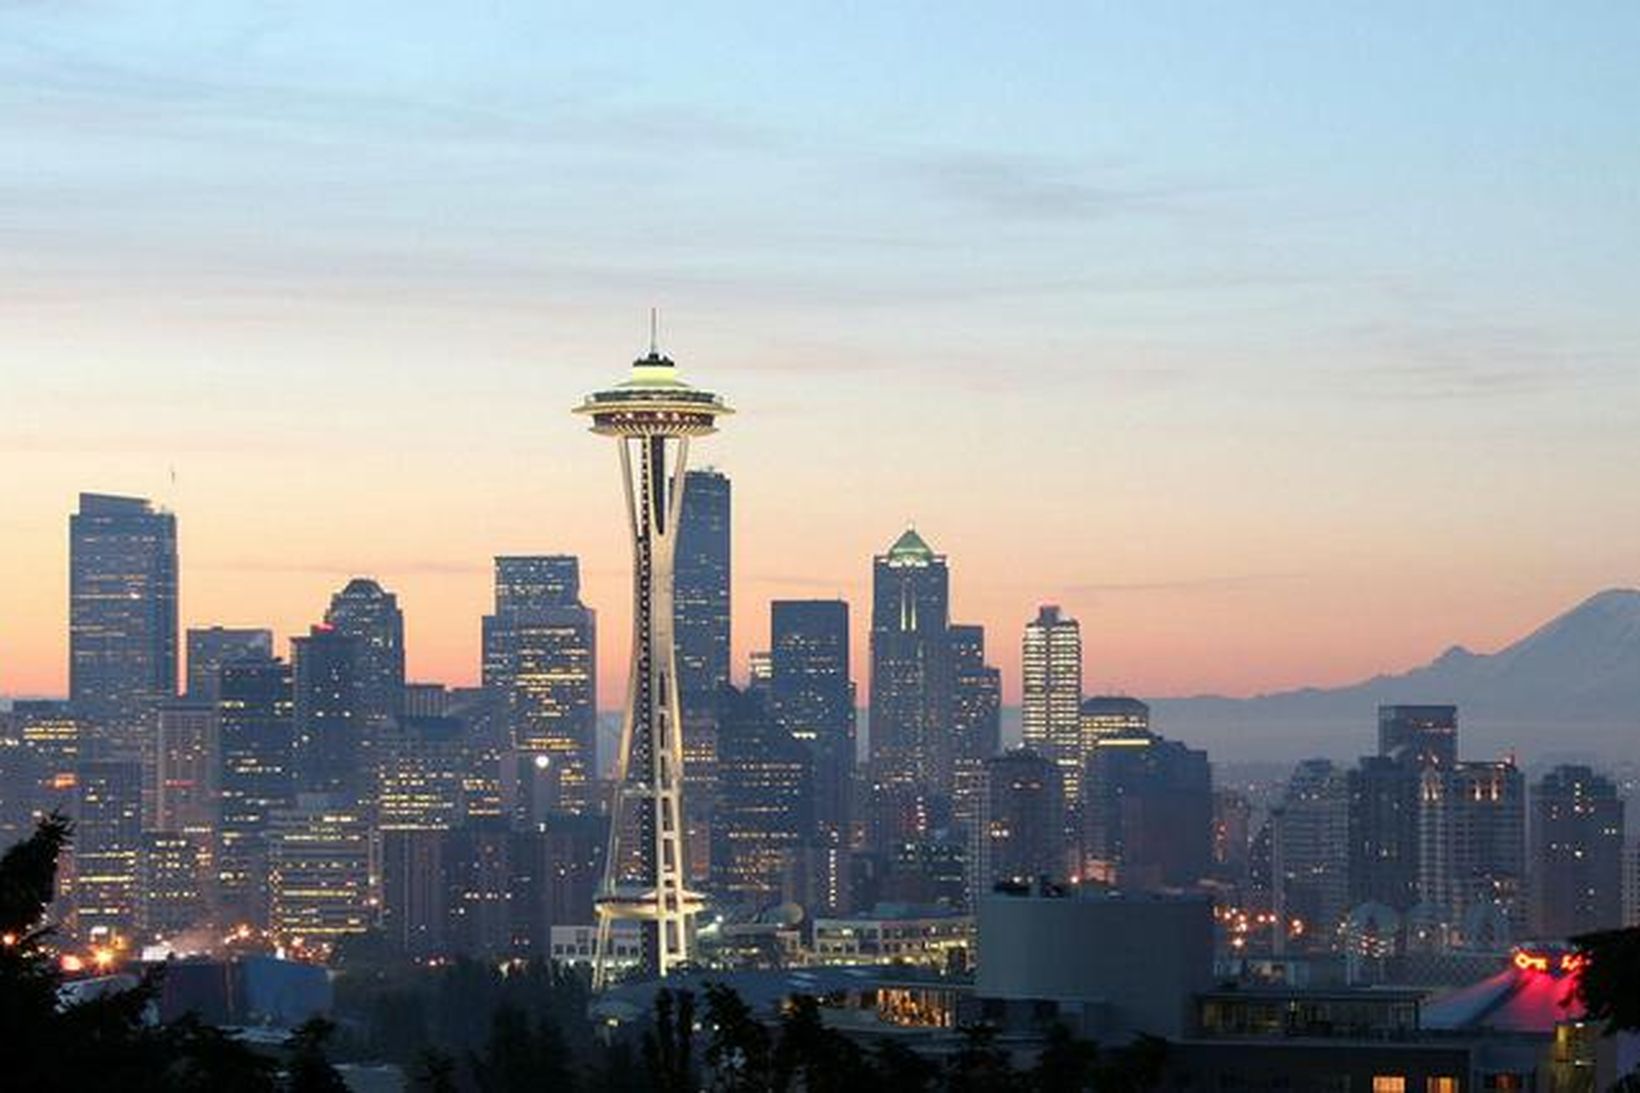 Hagkerfi Washington-ríkis, þar sem Seattle er stærsta borgarsvæðið, hefur á …